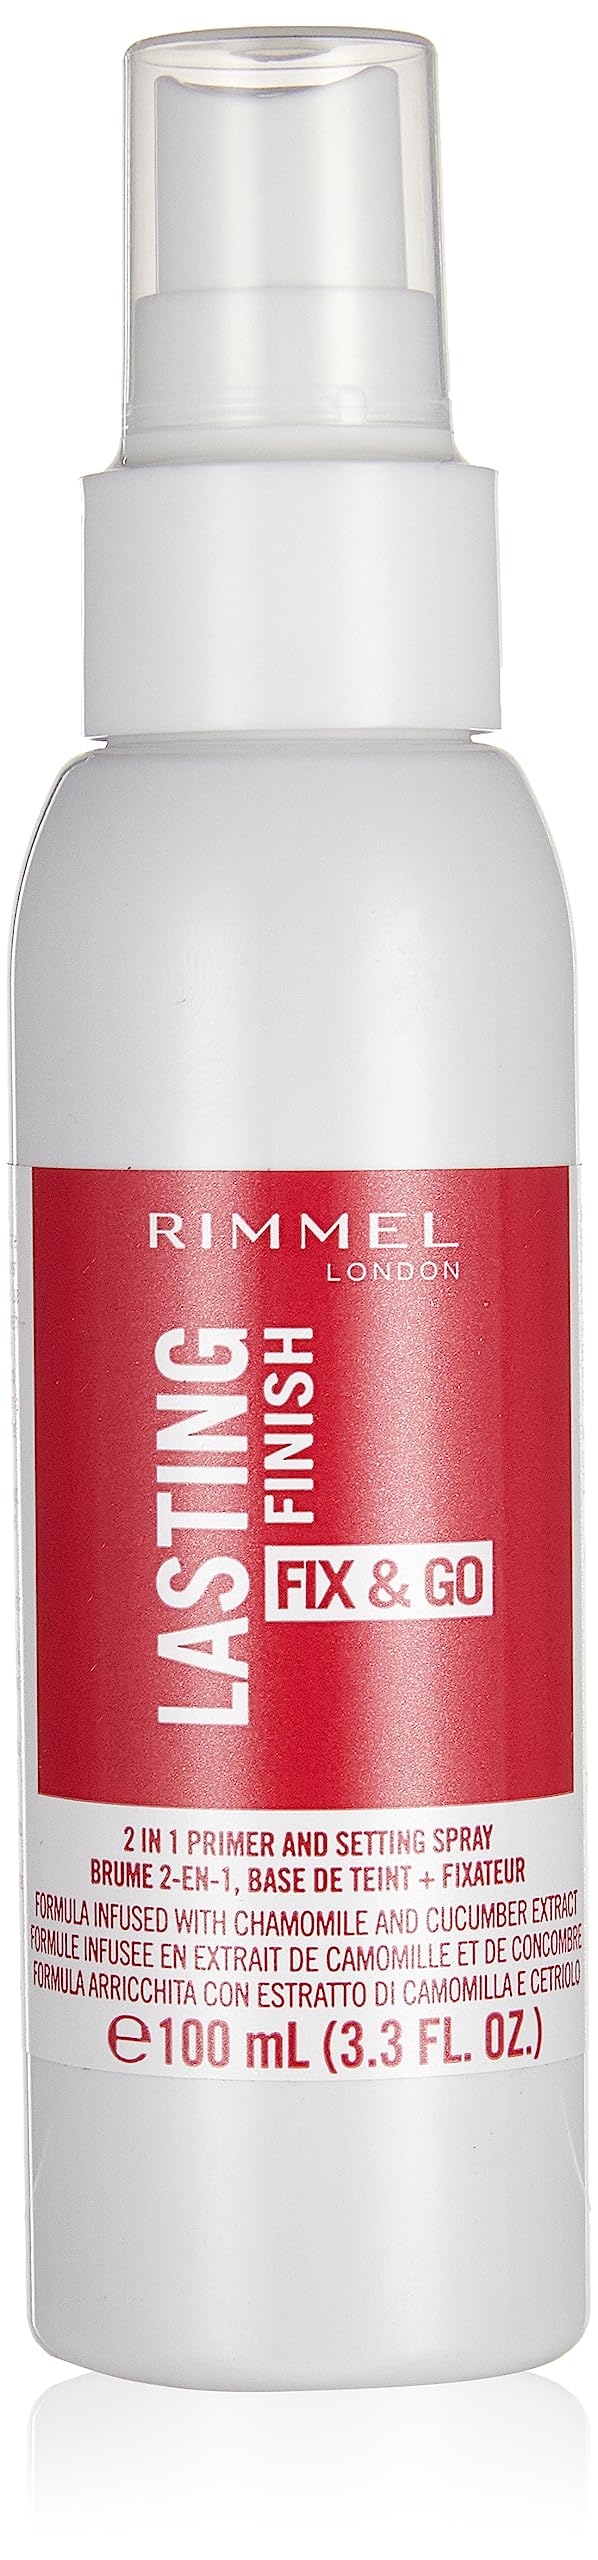 Rimmel London, Lasting Finish Fix & go Setting Spray, 100 ml